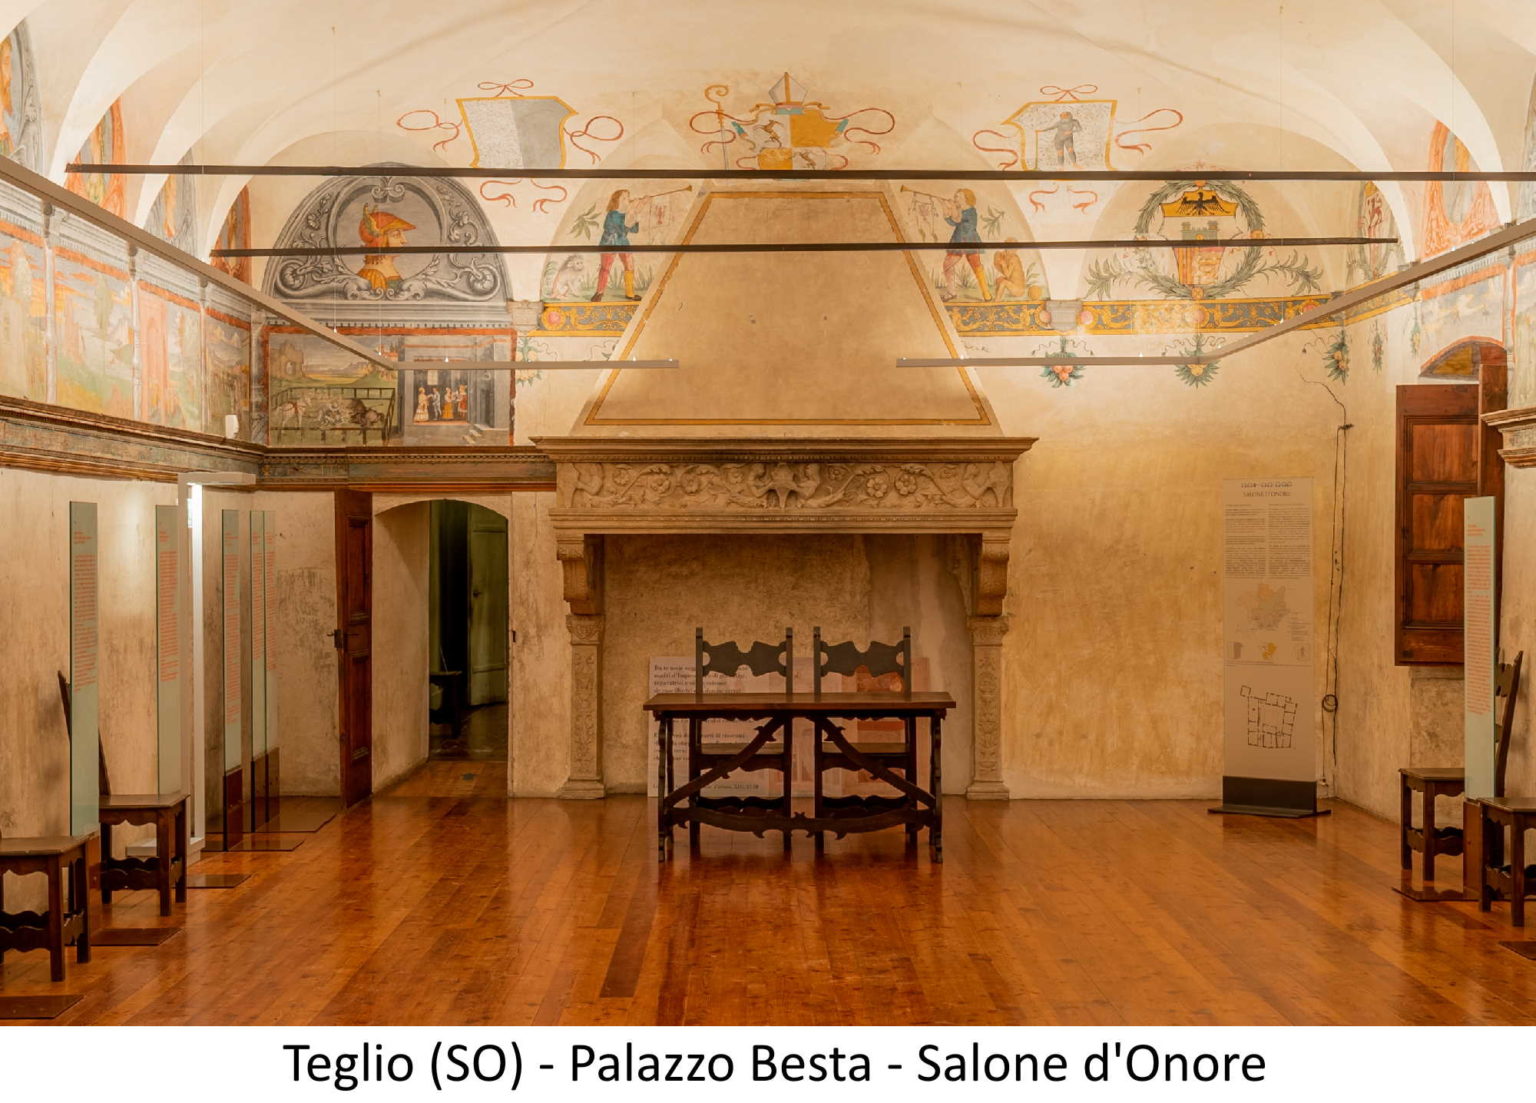 Teglio (SO) - Palazzo Besta - Salone d'Onore